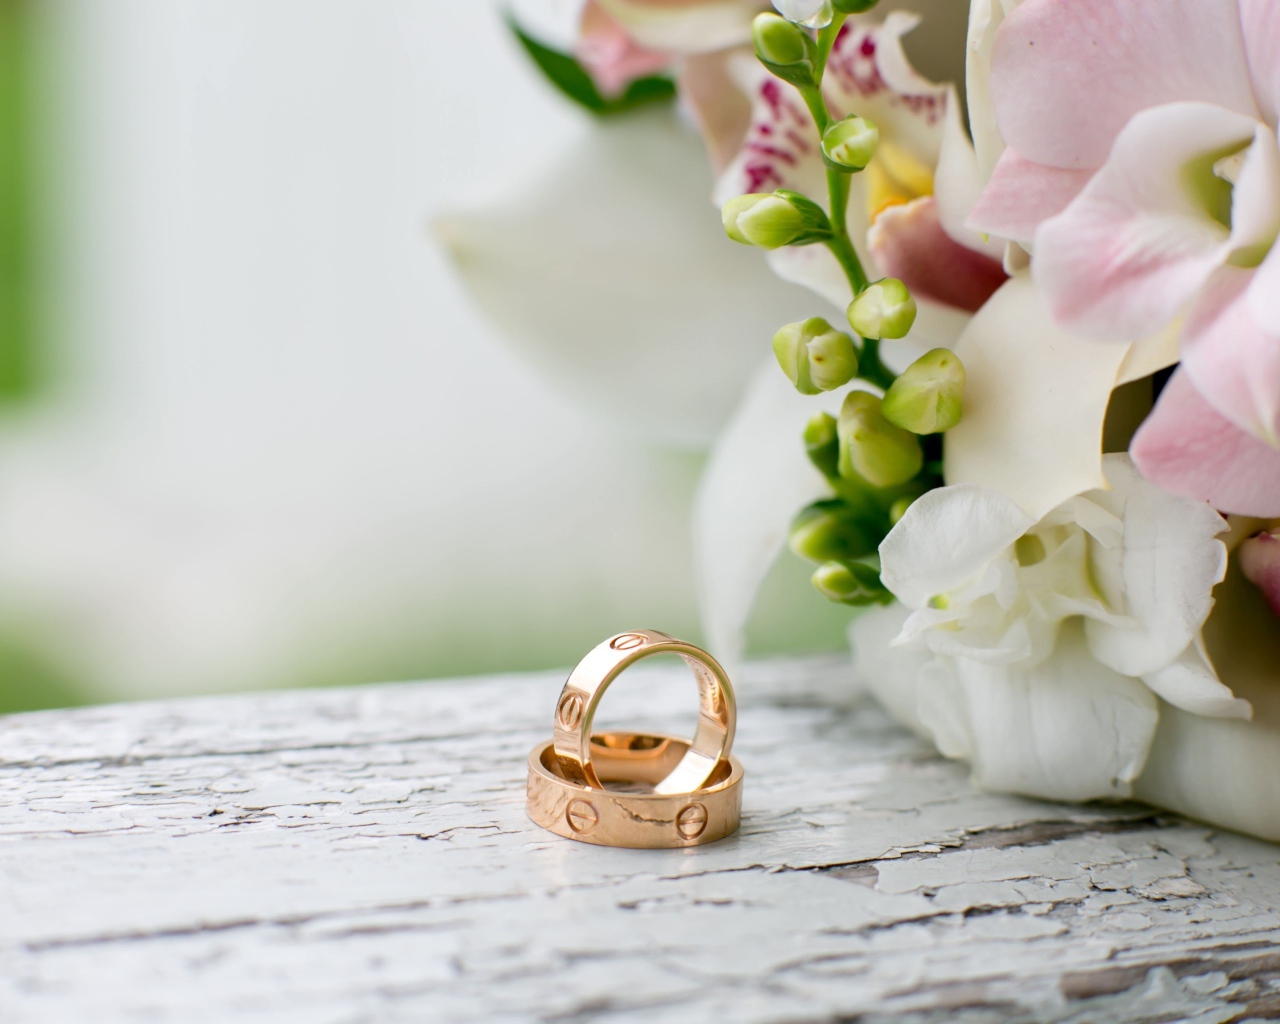 Два золотых обручальных кольца лежат на столе с цветами